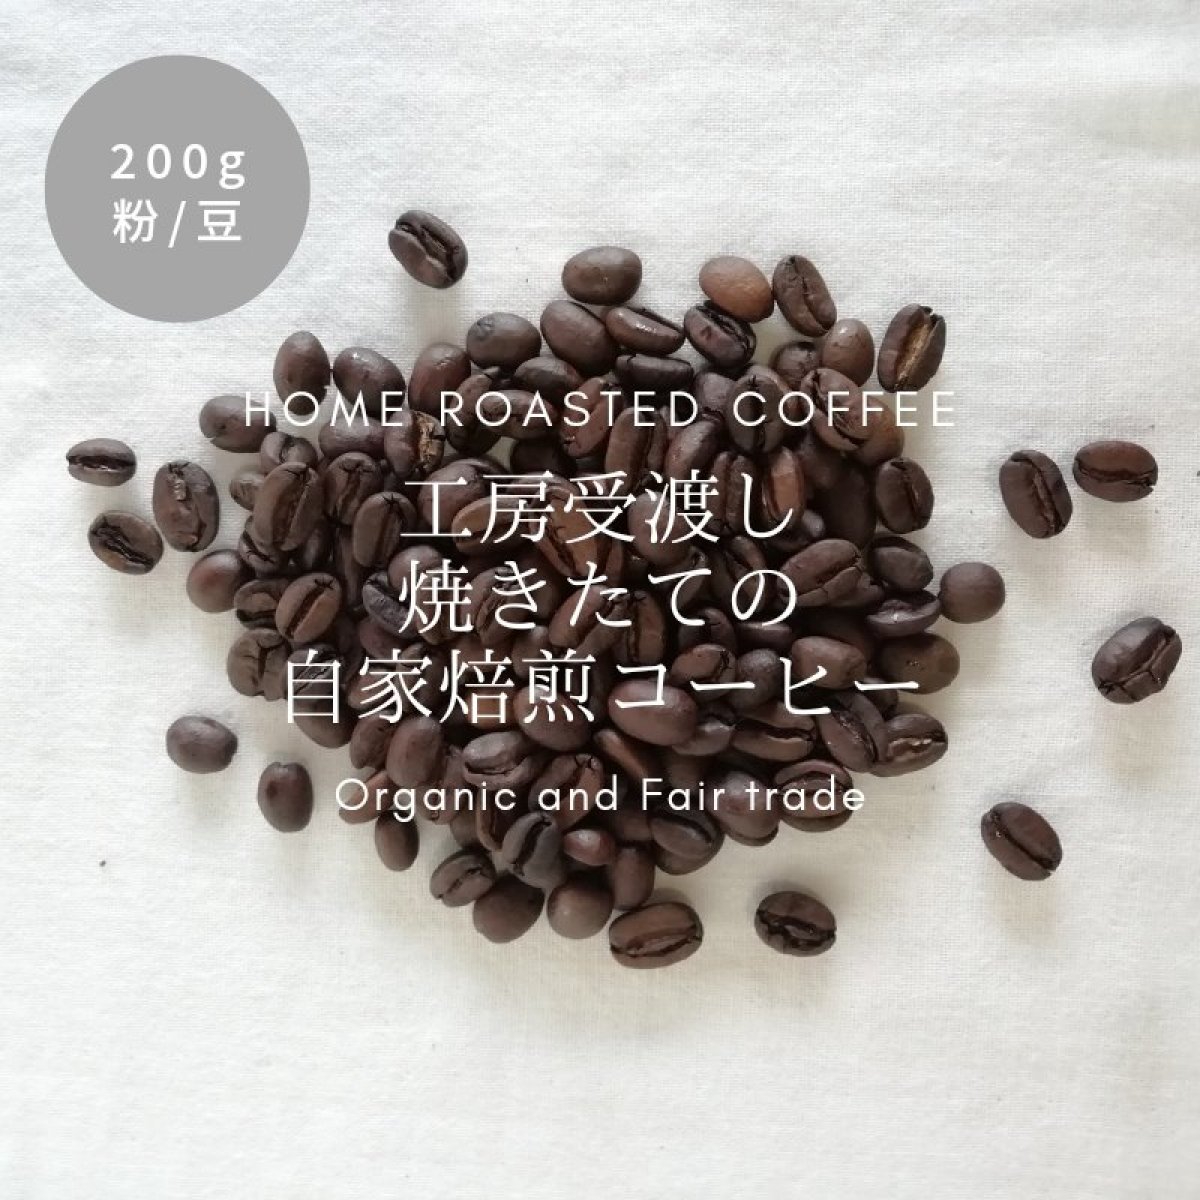 【直接受け渡し専用】200g 自家焙煎コーヒー豆 / オーガニック ＆ フェアトレード